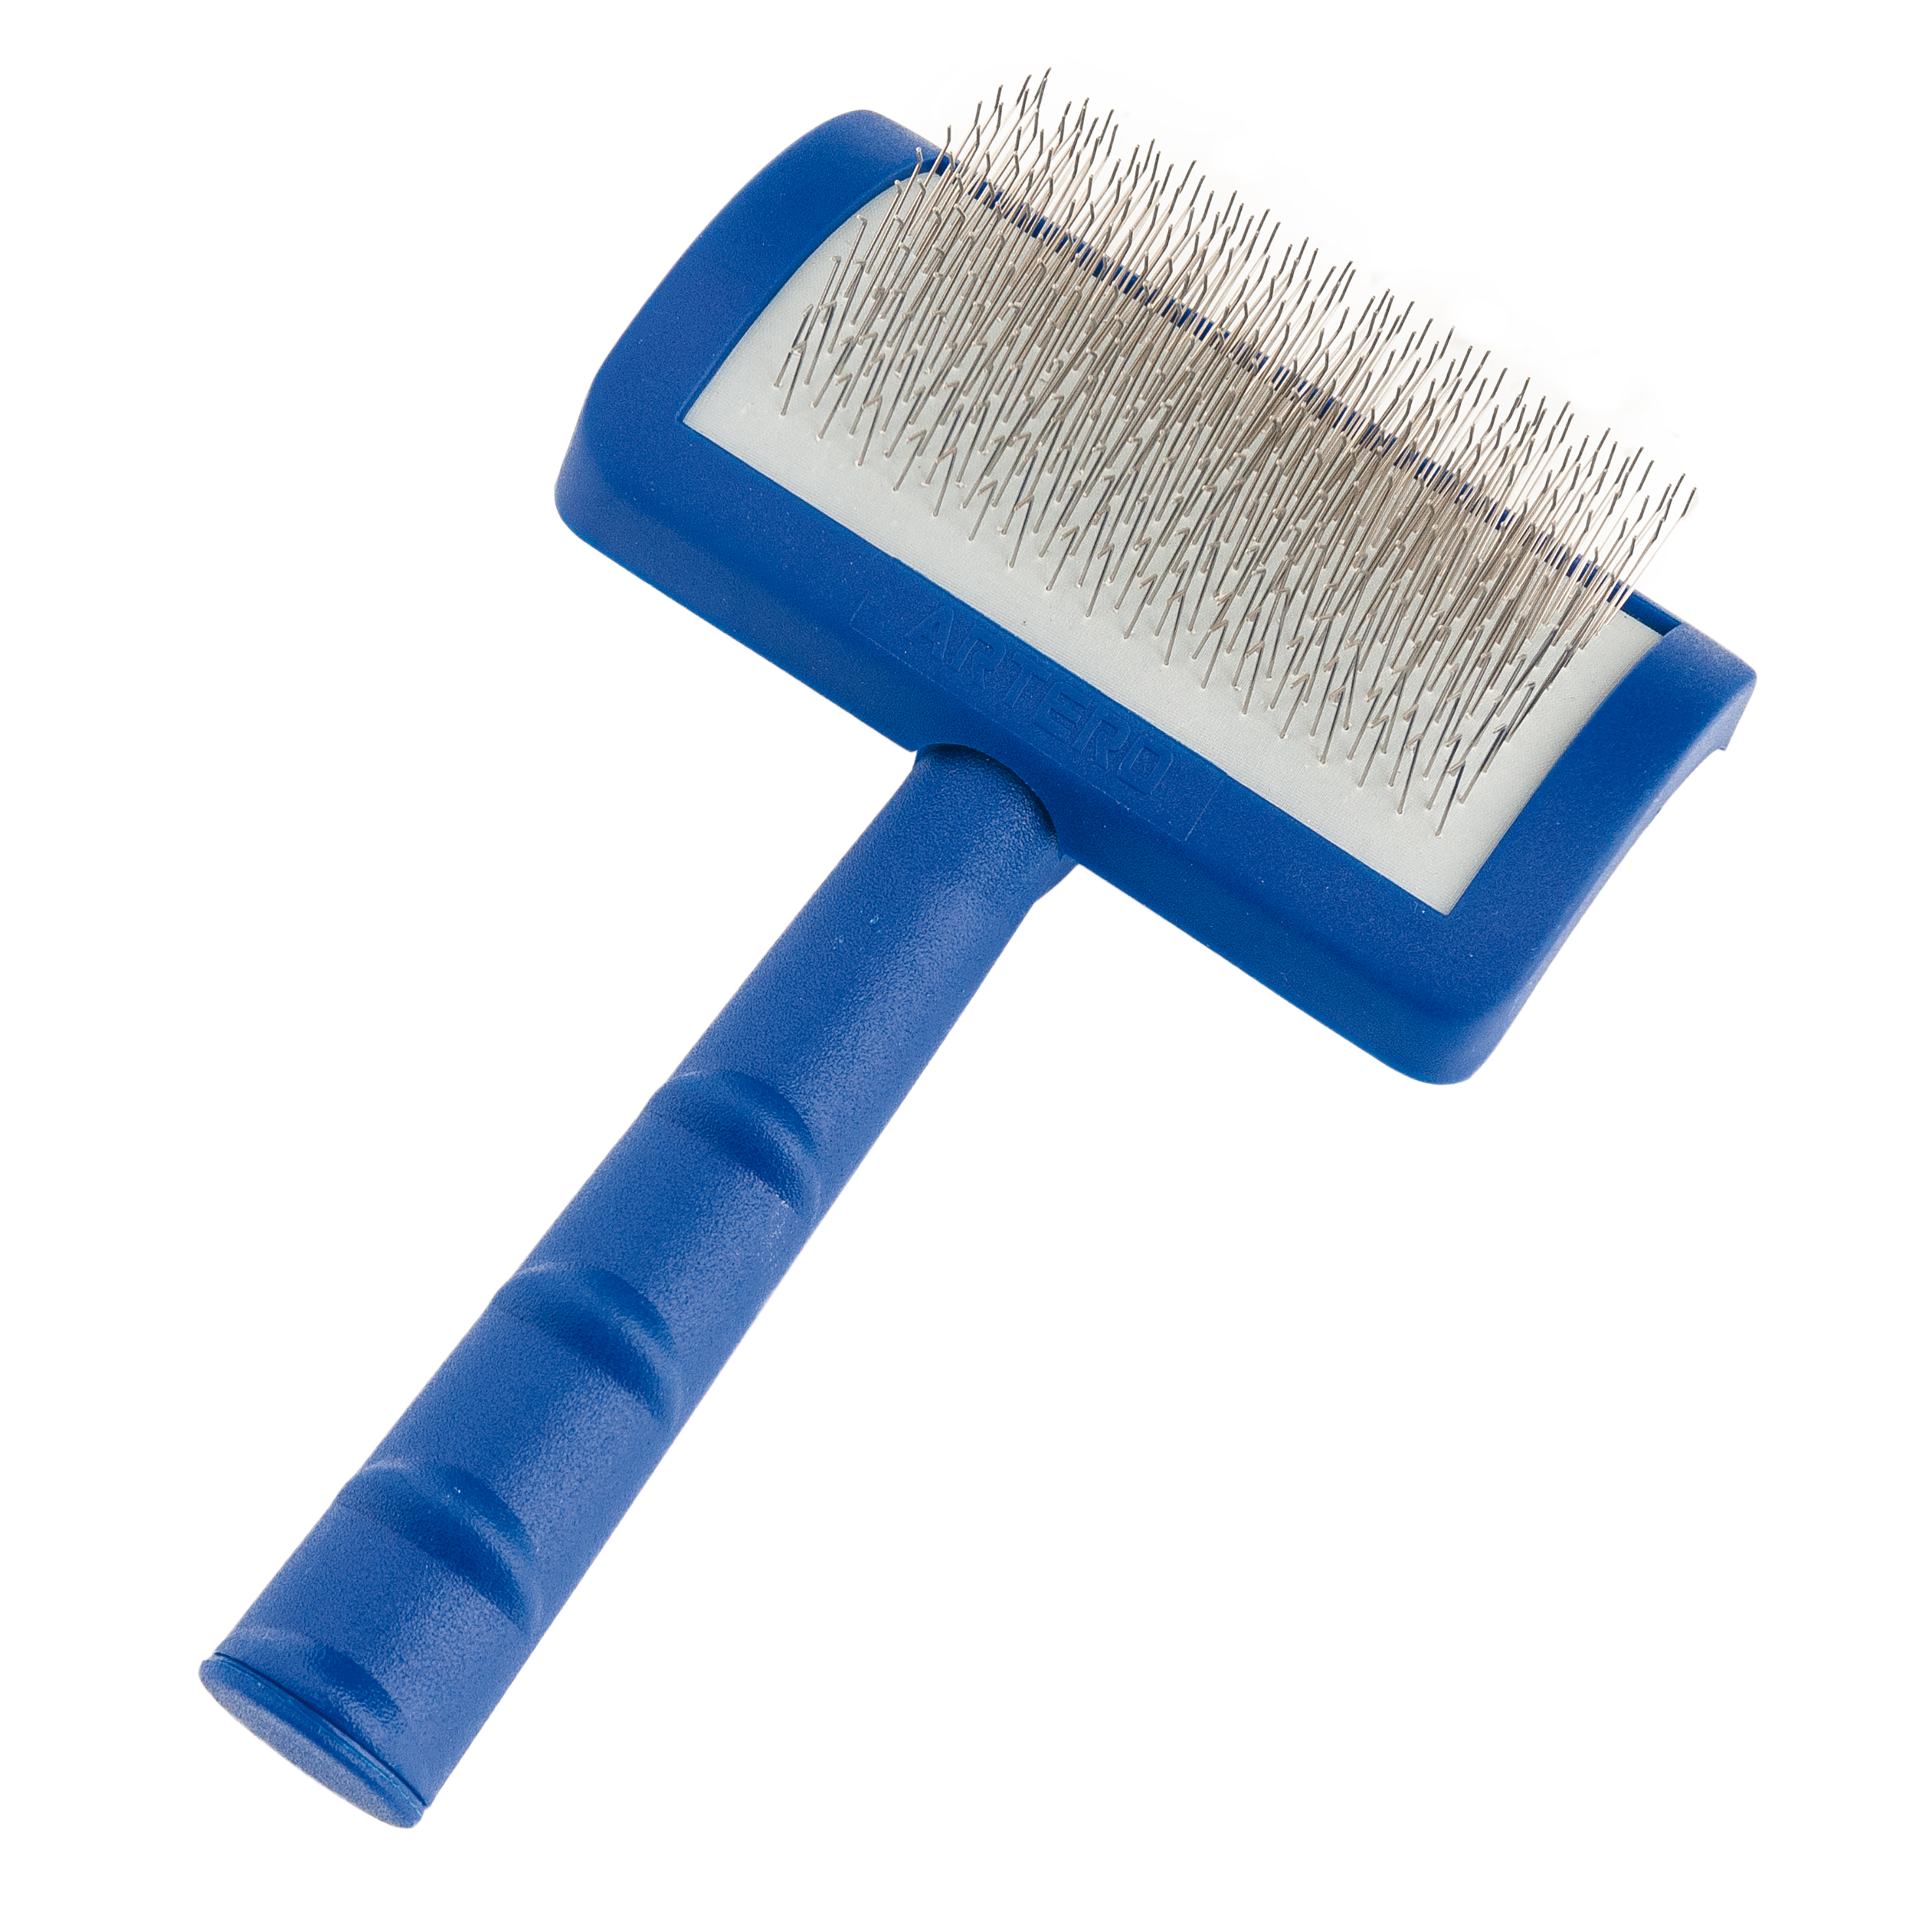 ARTERO Universal Slicker Brush